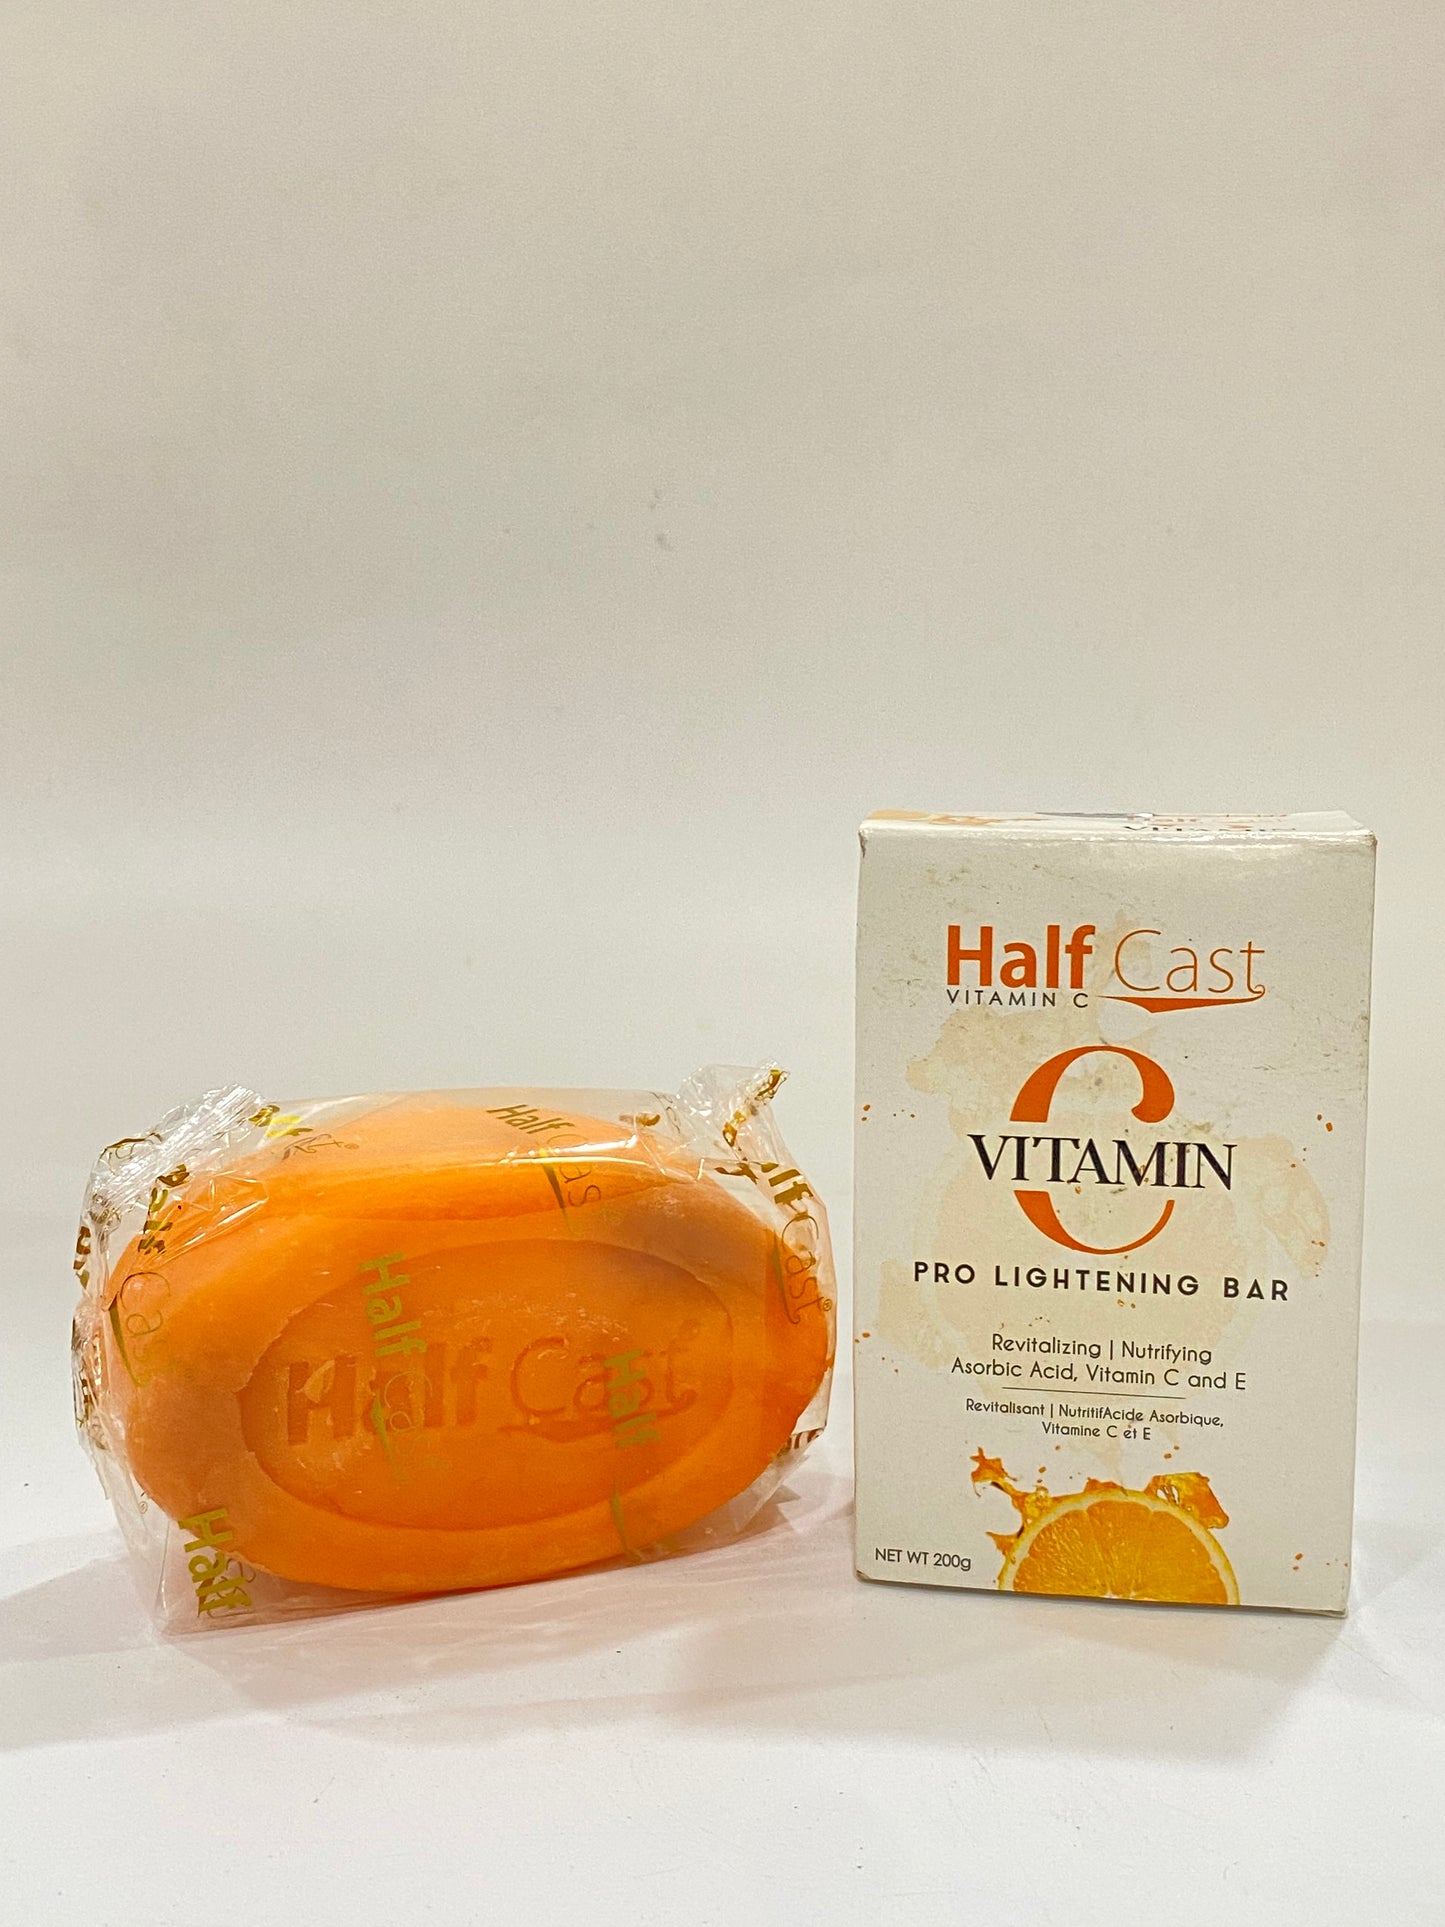 Half Cast Vitamin C Pro Lightening Bar